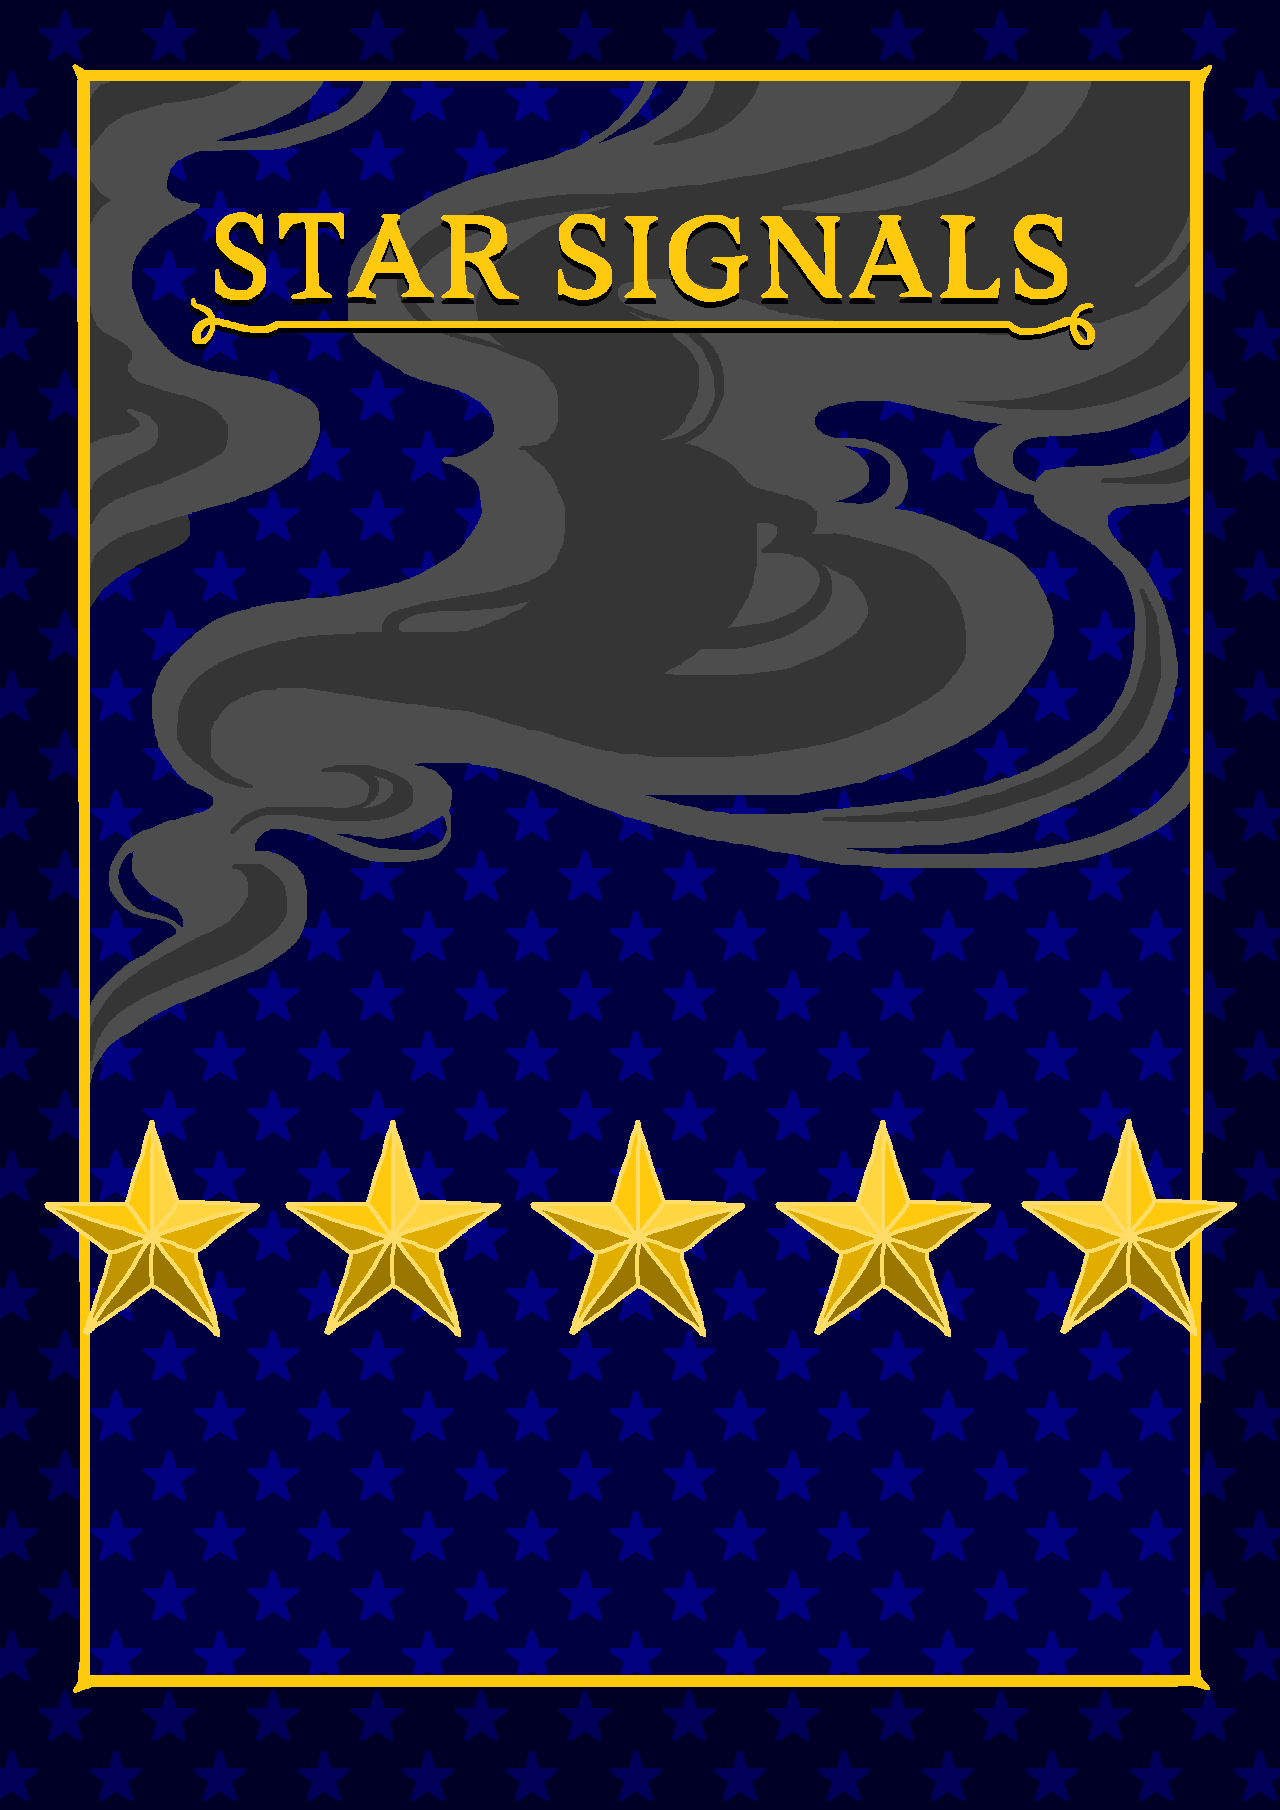 Star Signals by SunnyClockwork on DeviantArt